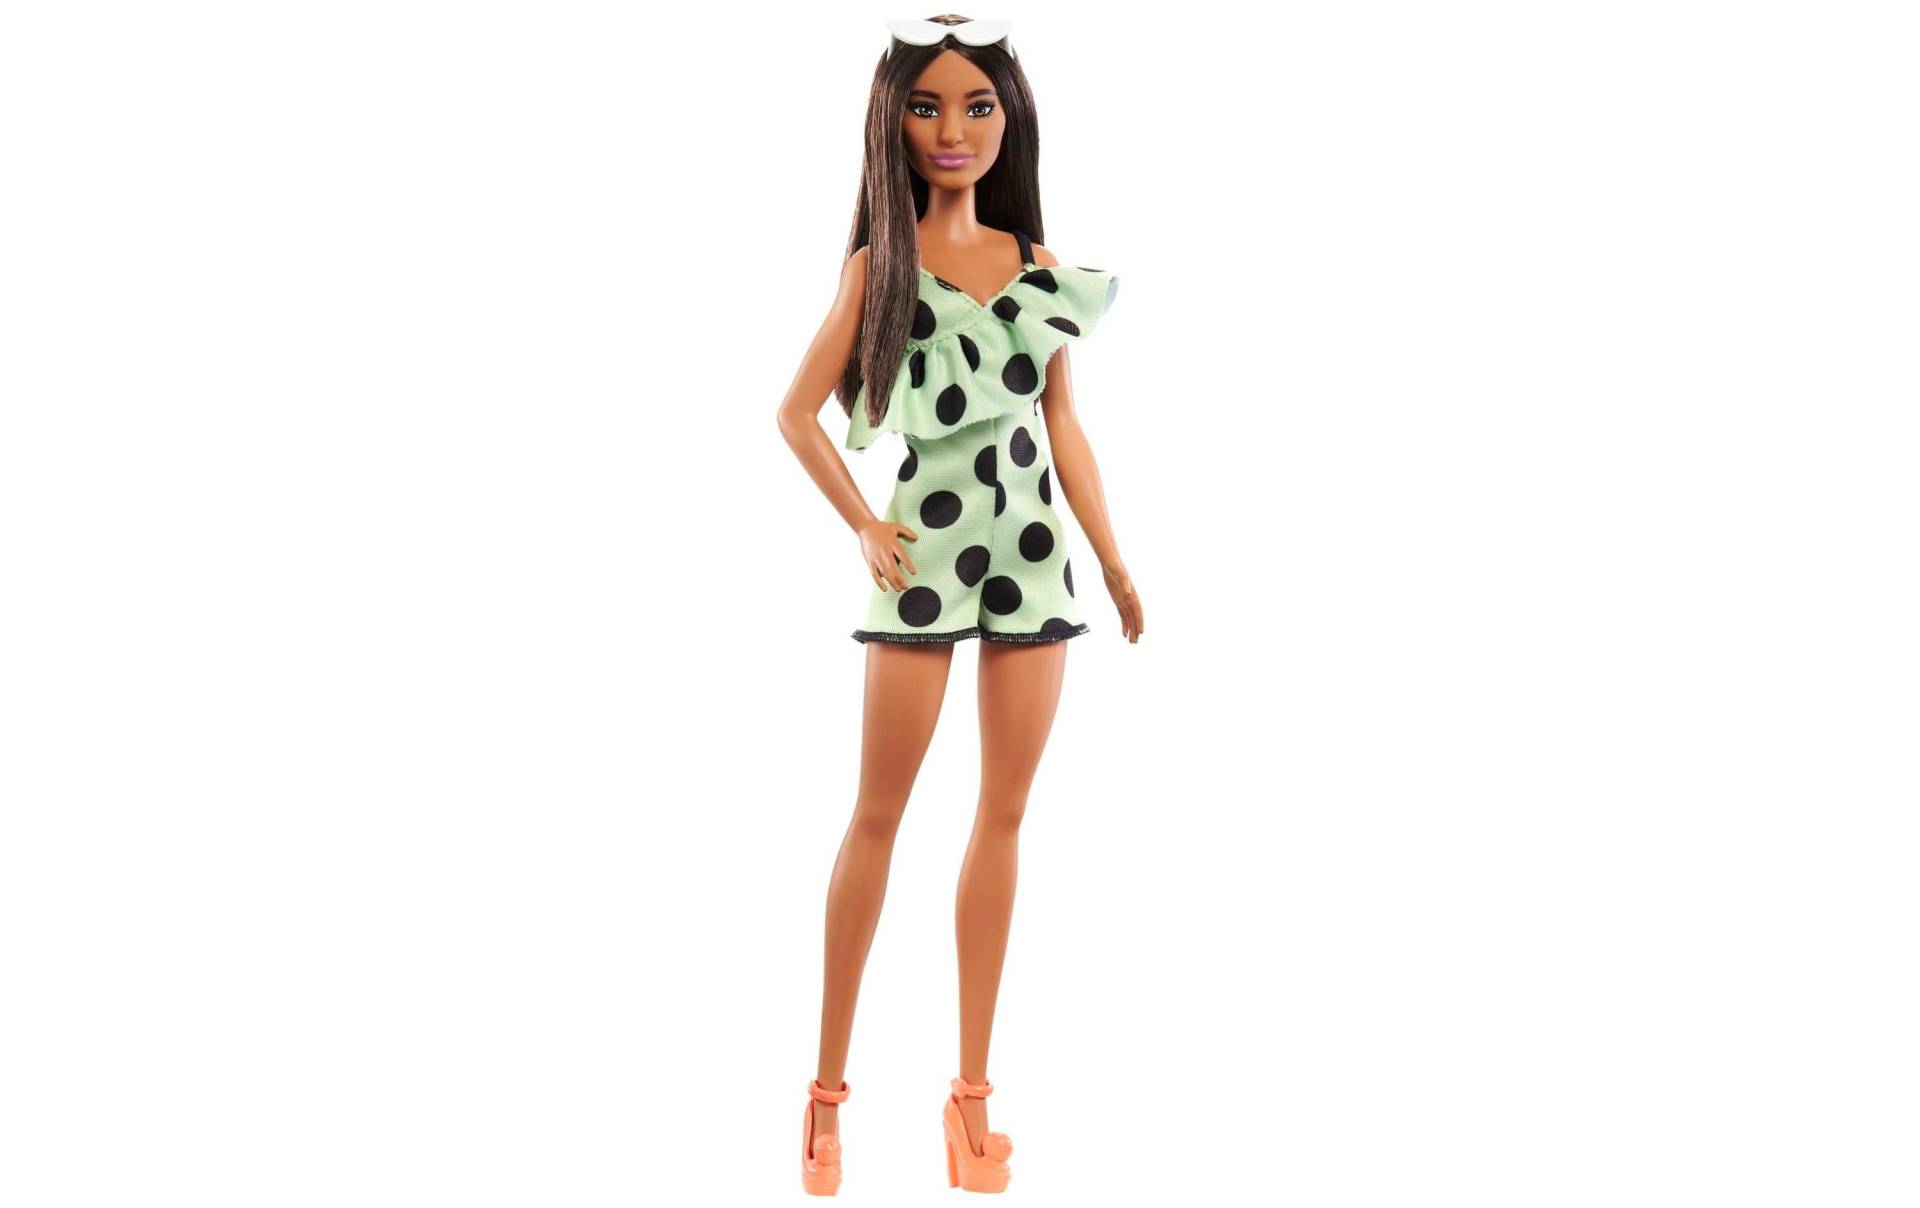 Barbie Anziehpuppe »Barbie Fashionistas Puppe« von Barbie